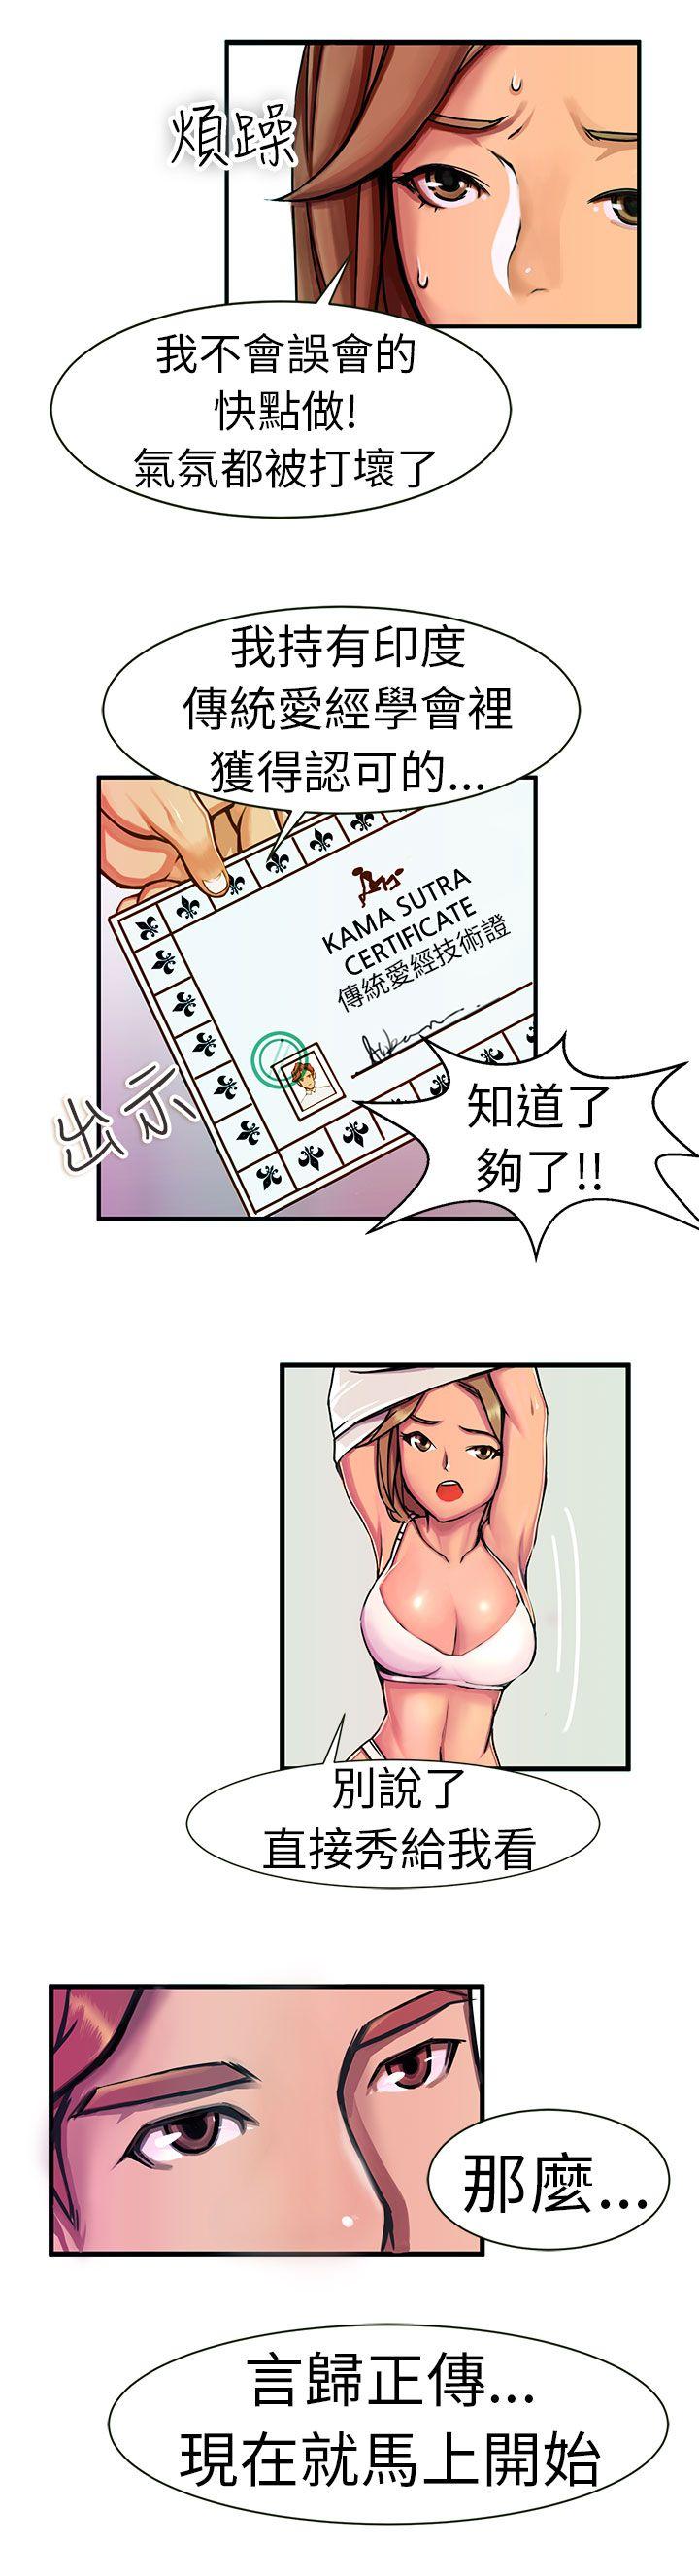 韩国污漫画 派愛達人 最终话 3